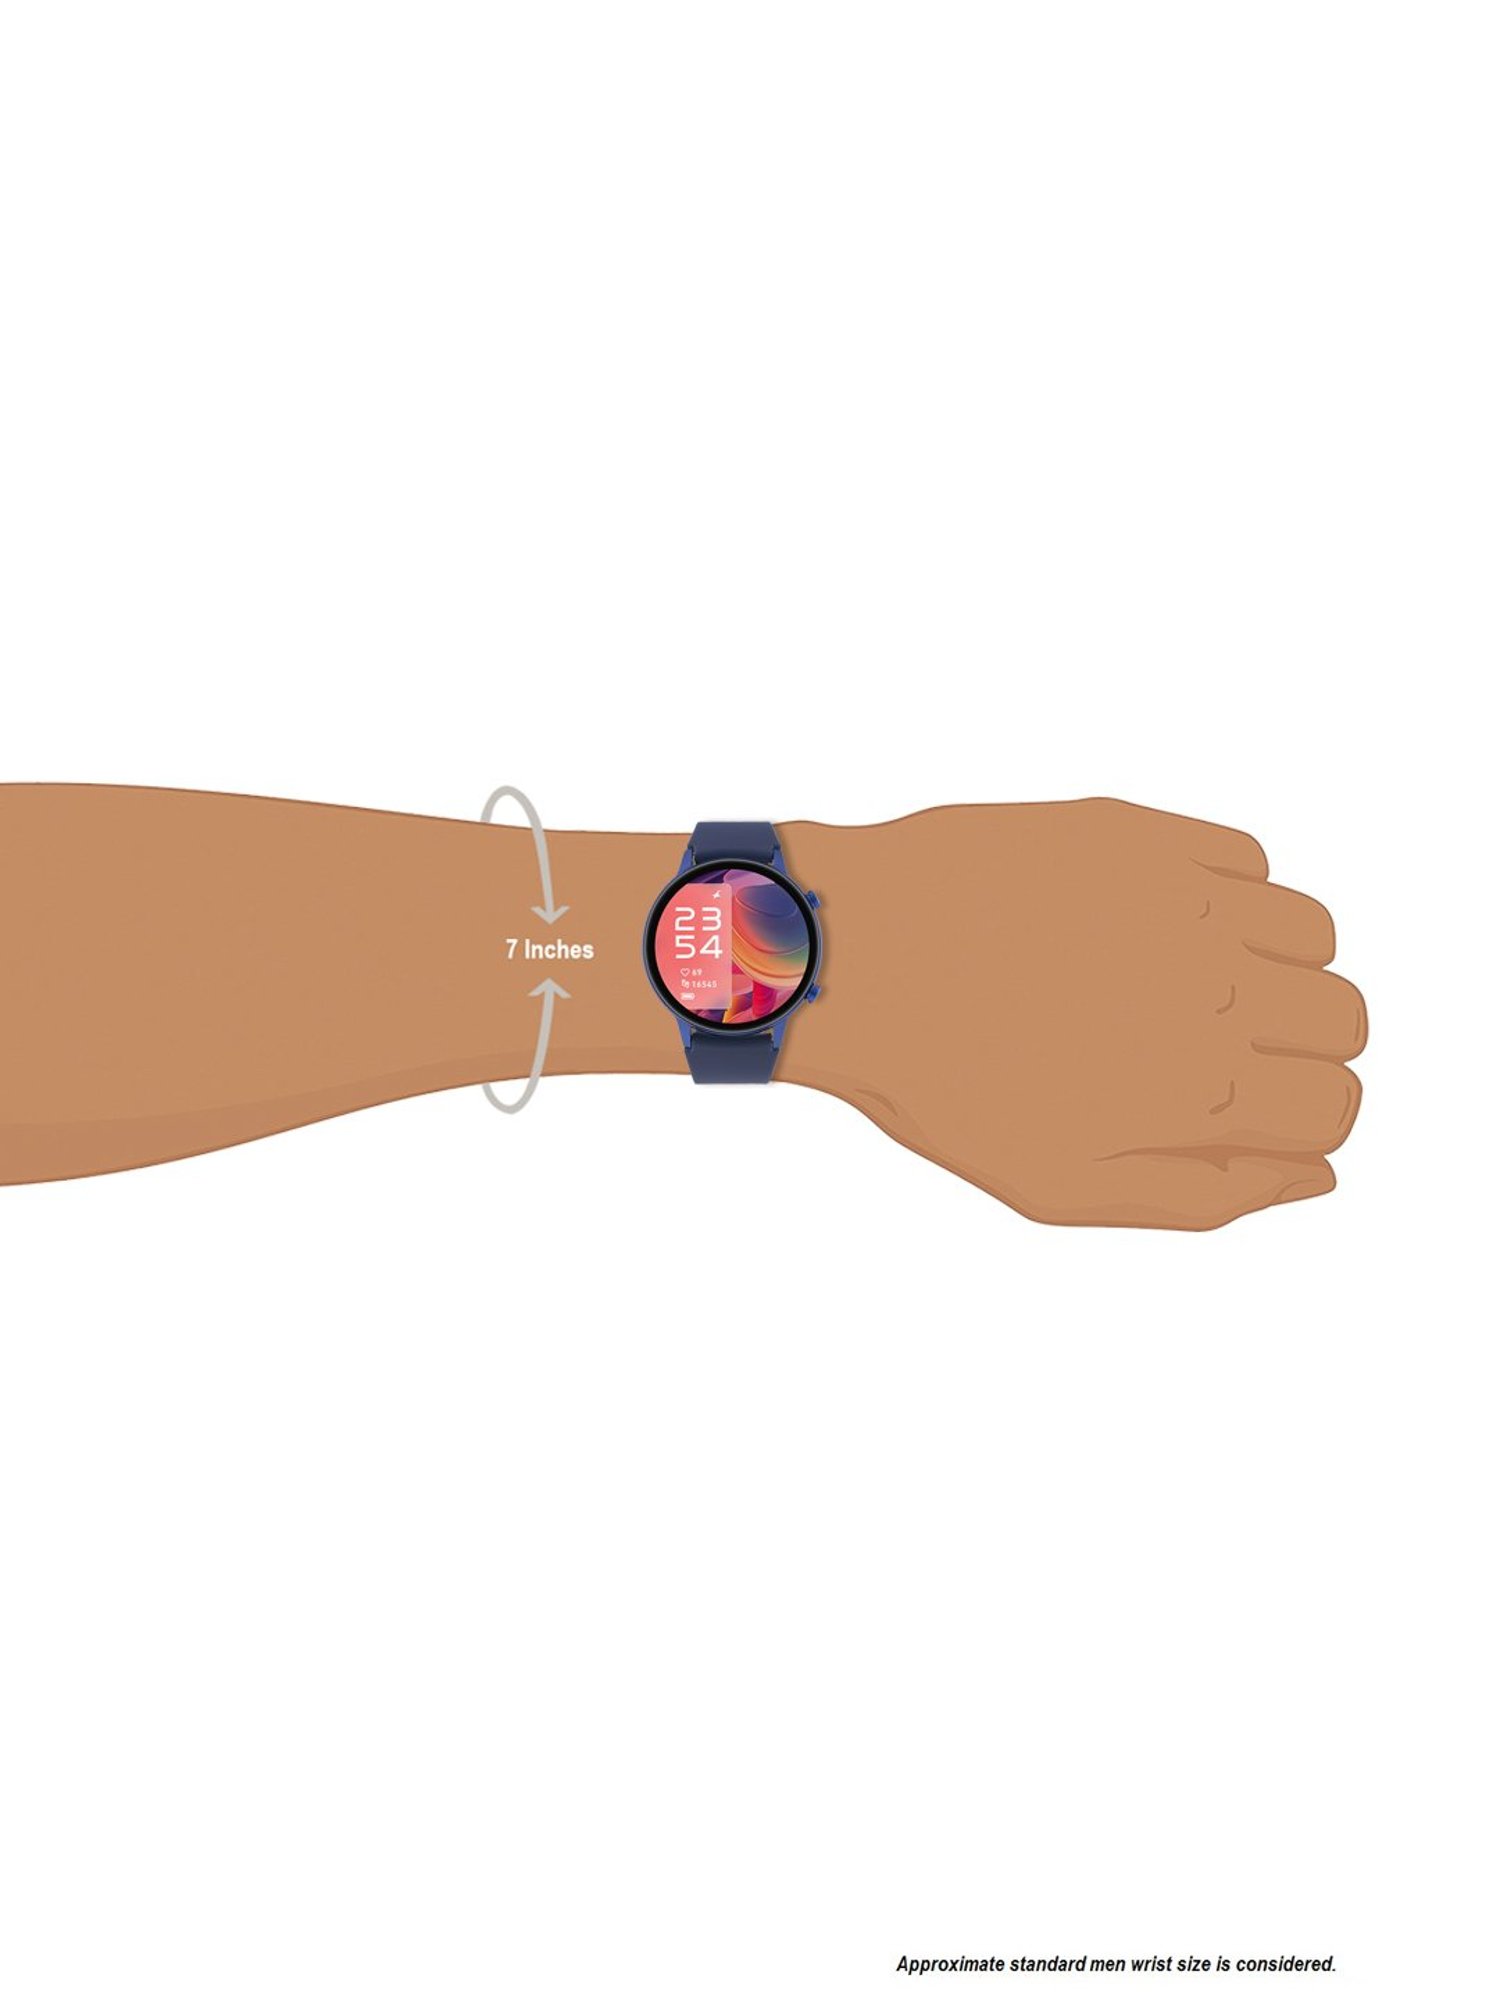 HMT Smitha NOS original hand winding mechanical watch for women | eBay